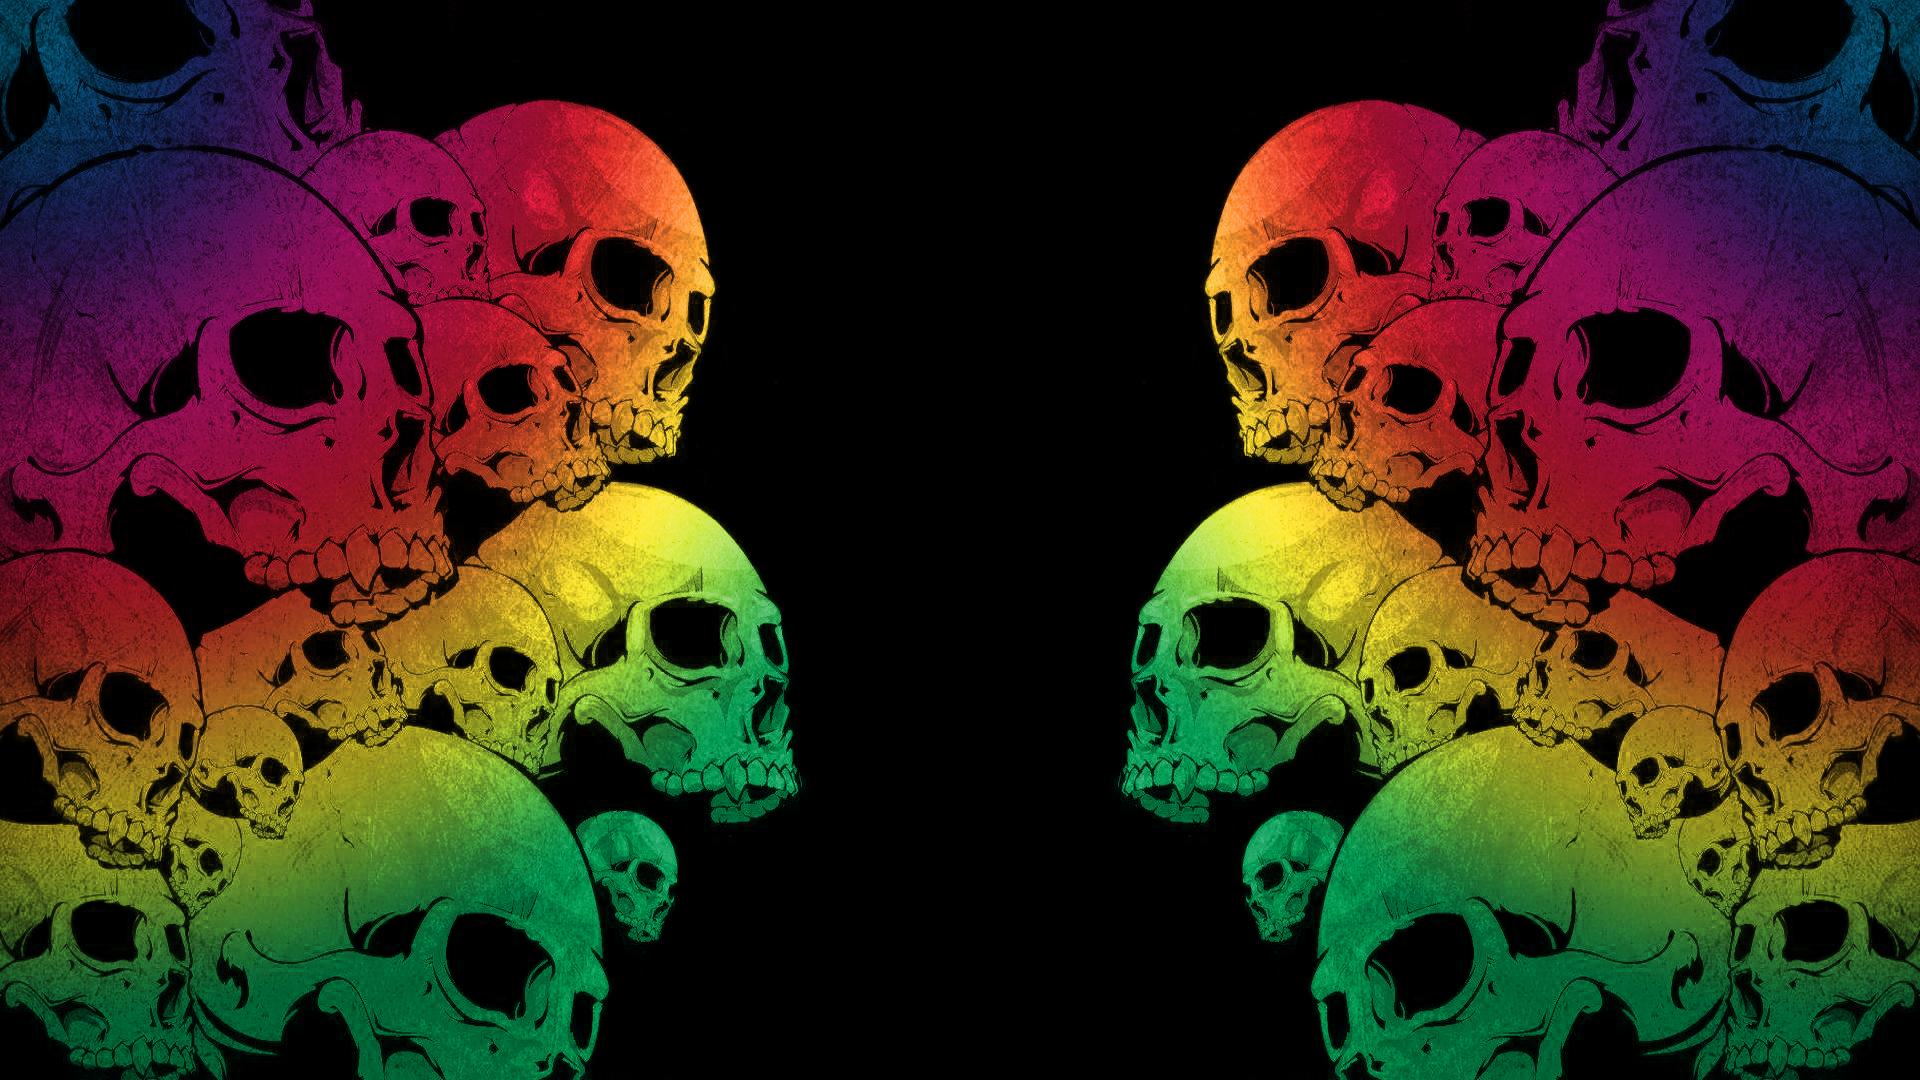 Skull backgrounds